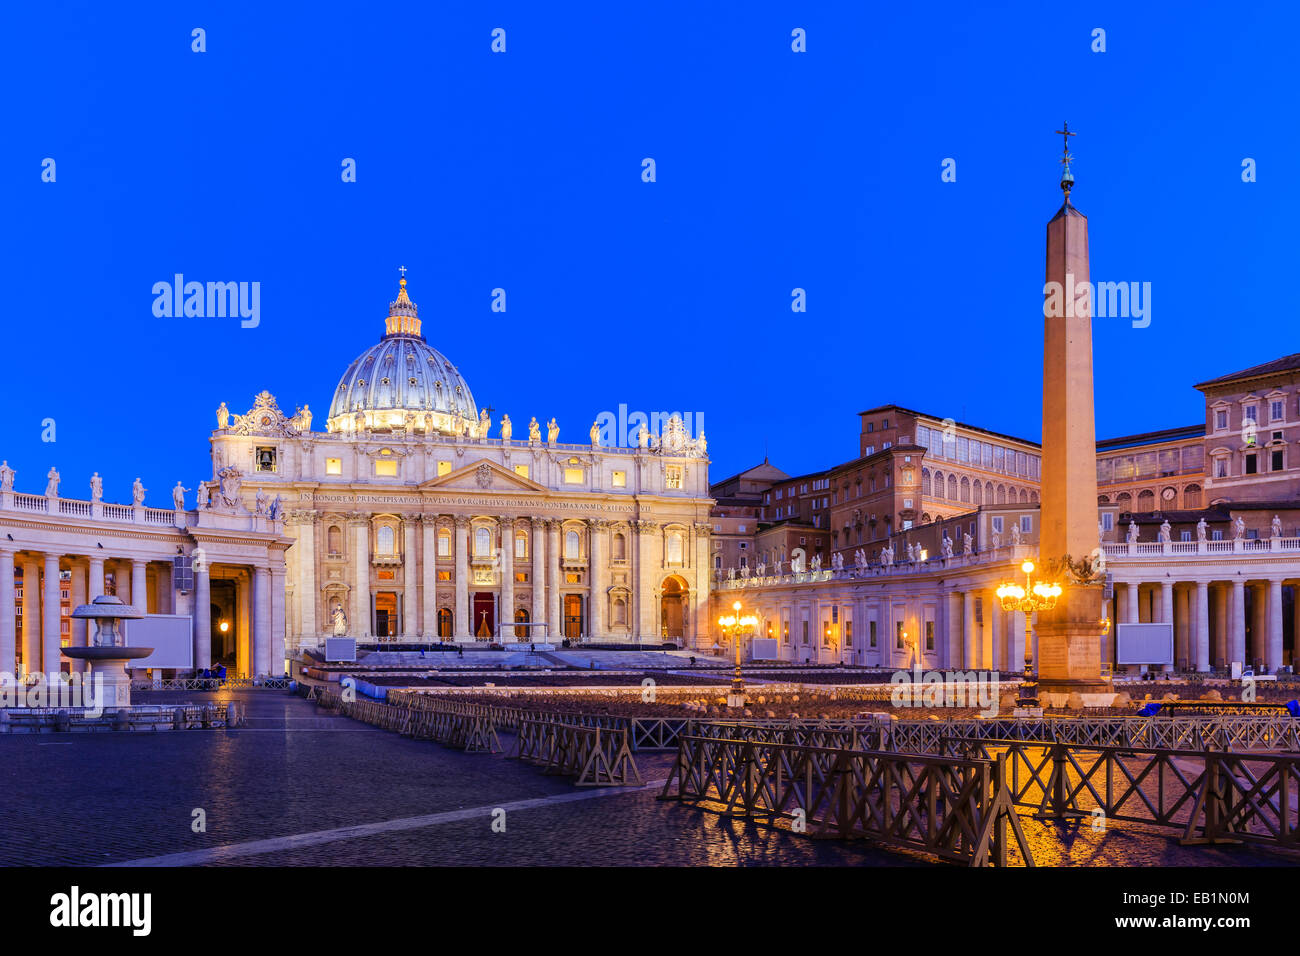 La cité du Vatican. Rome, Italie Banque D'Images